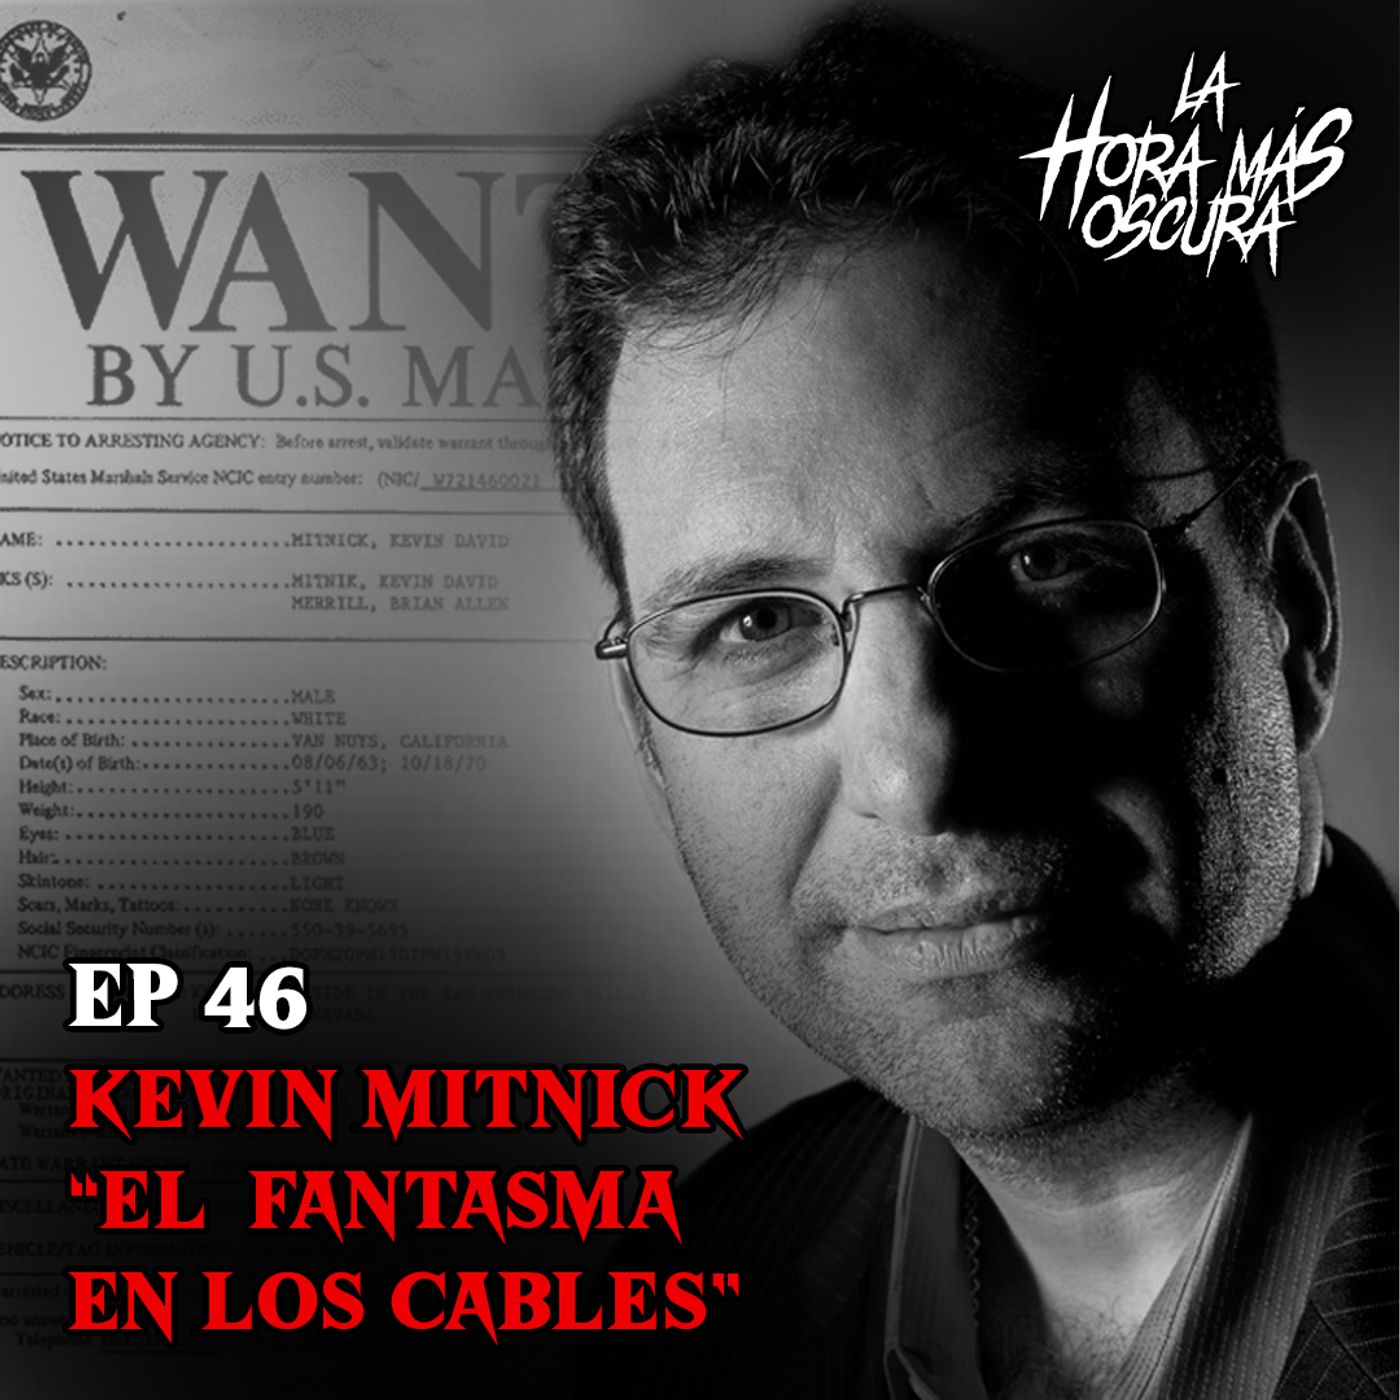 Ep46: Kevin Mitnick "El Fantasma En Los Cables"